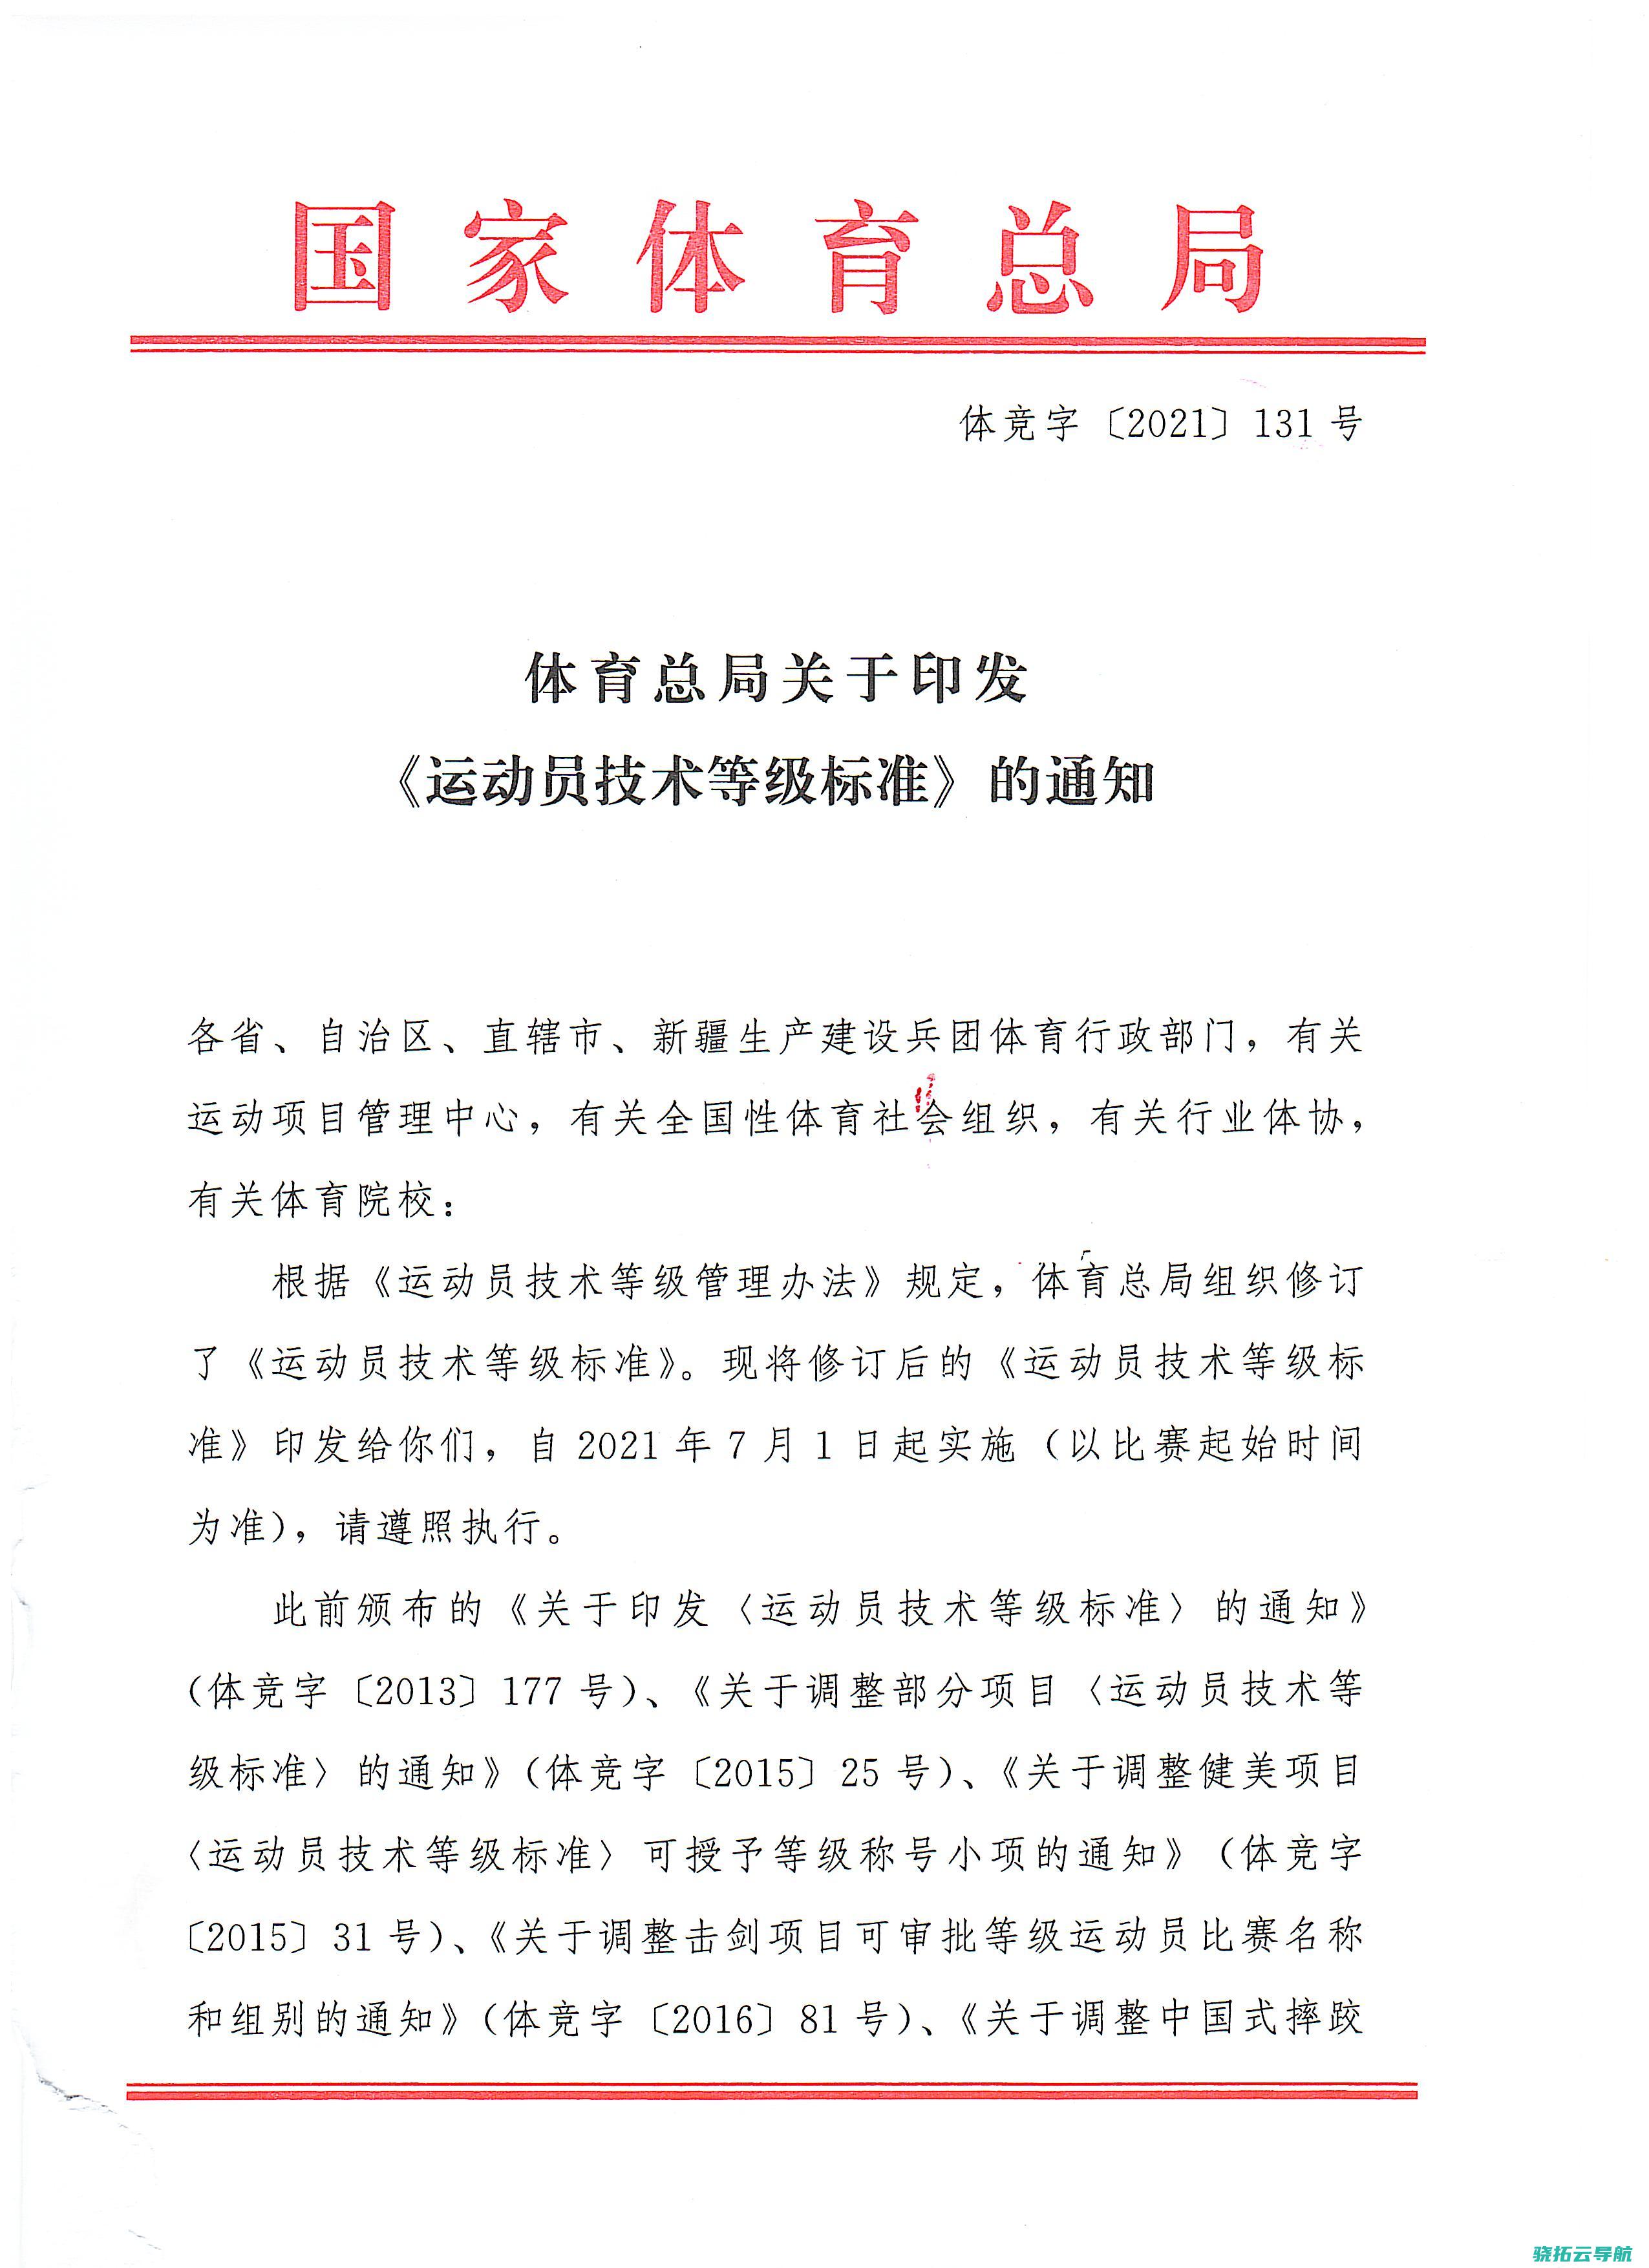 国度体育总局原党组成员 副局长杜兆才重大违纪违法被开革党籍和公职